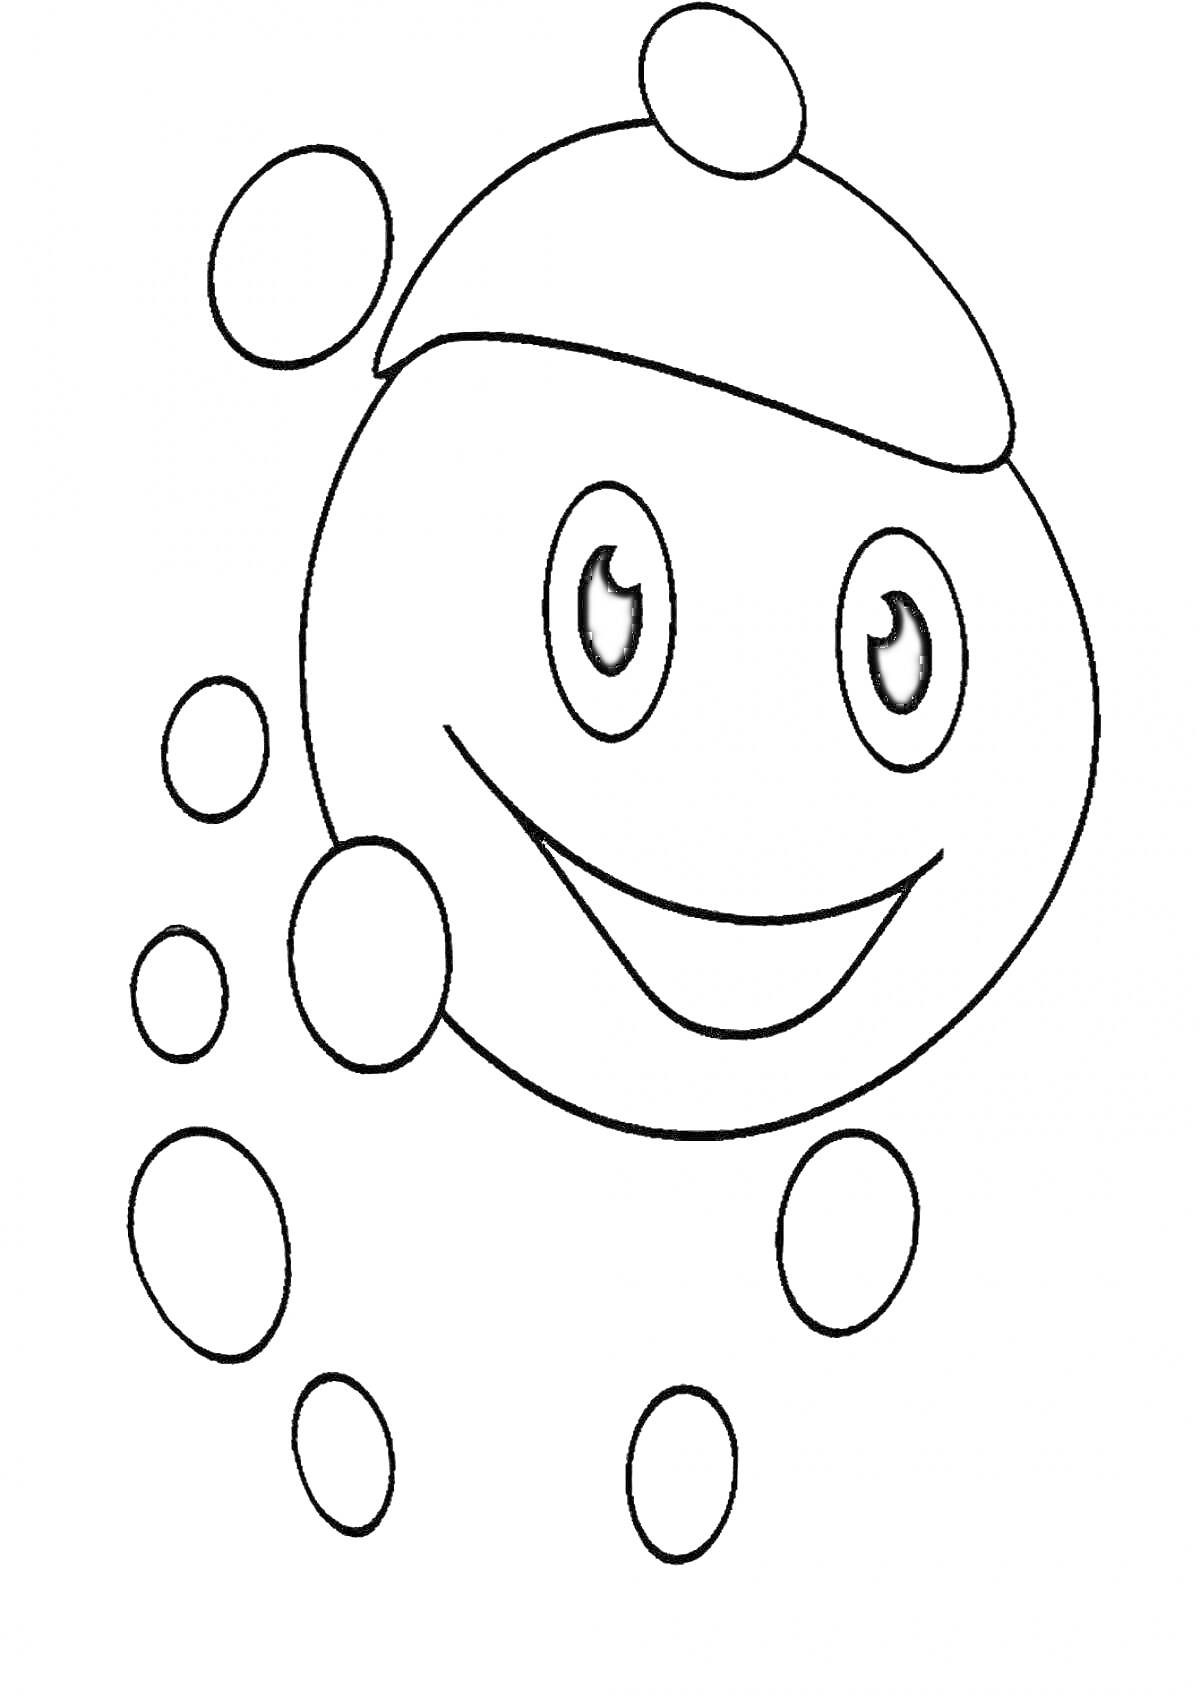 Раскраска Капелька с лицом и пузырями